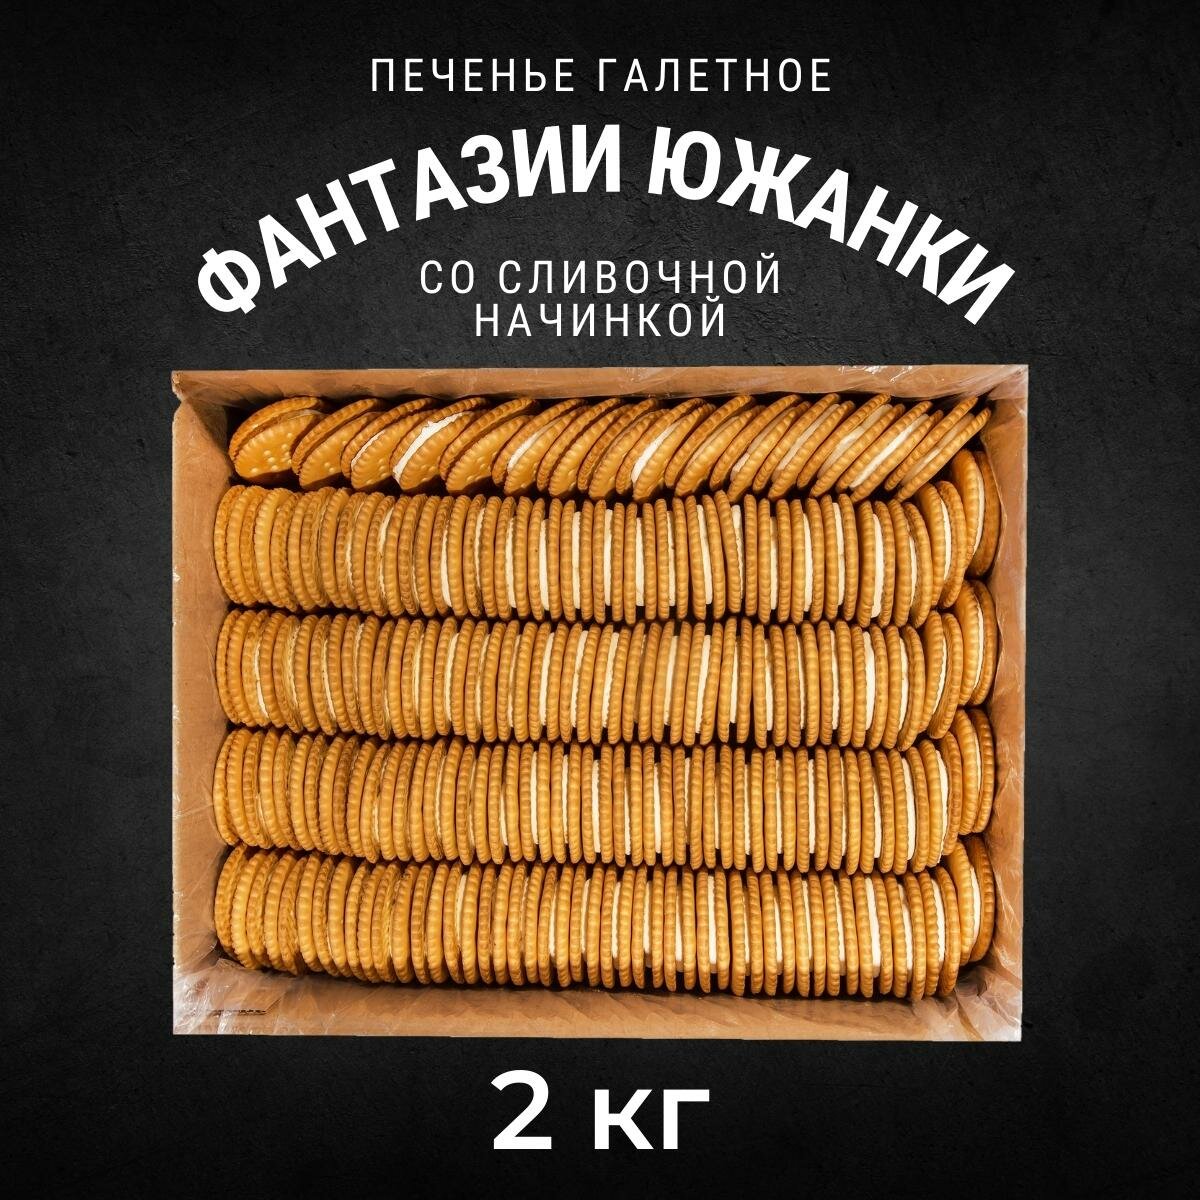 Печенье галетное Черногорский фантазии южанки с начинкой сливочный аромат 2 кг